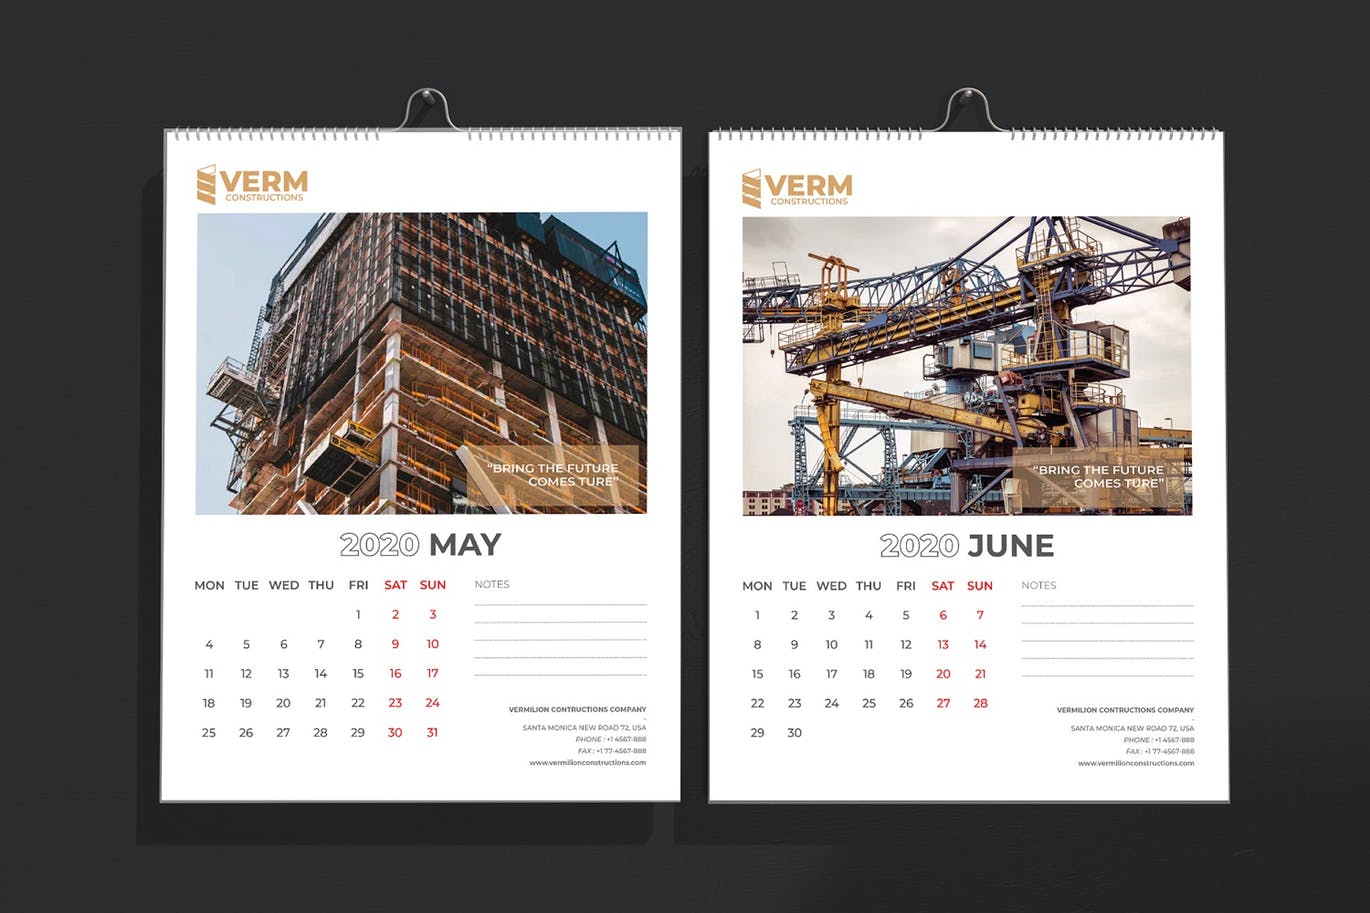 2020年建筑主题台历&挂墙日历表设计模板 Construction Wall & Table Calendar 2020插图(5)